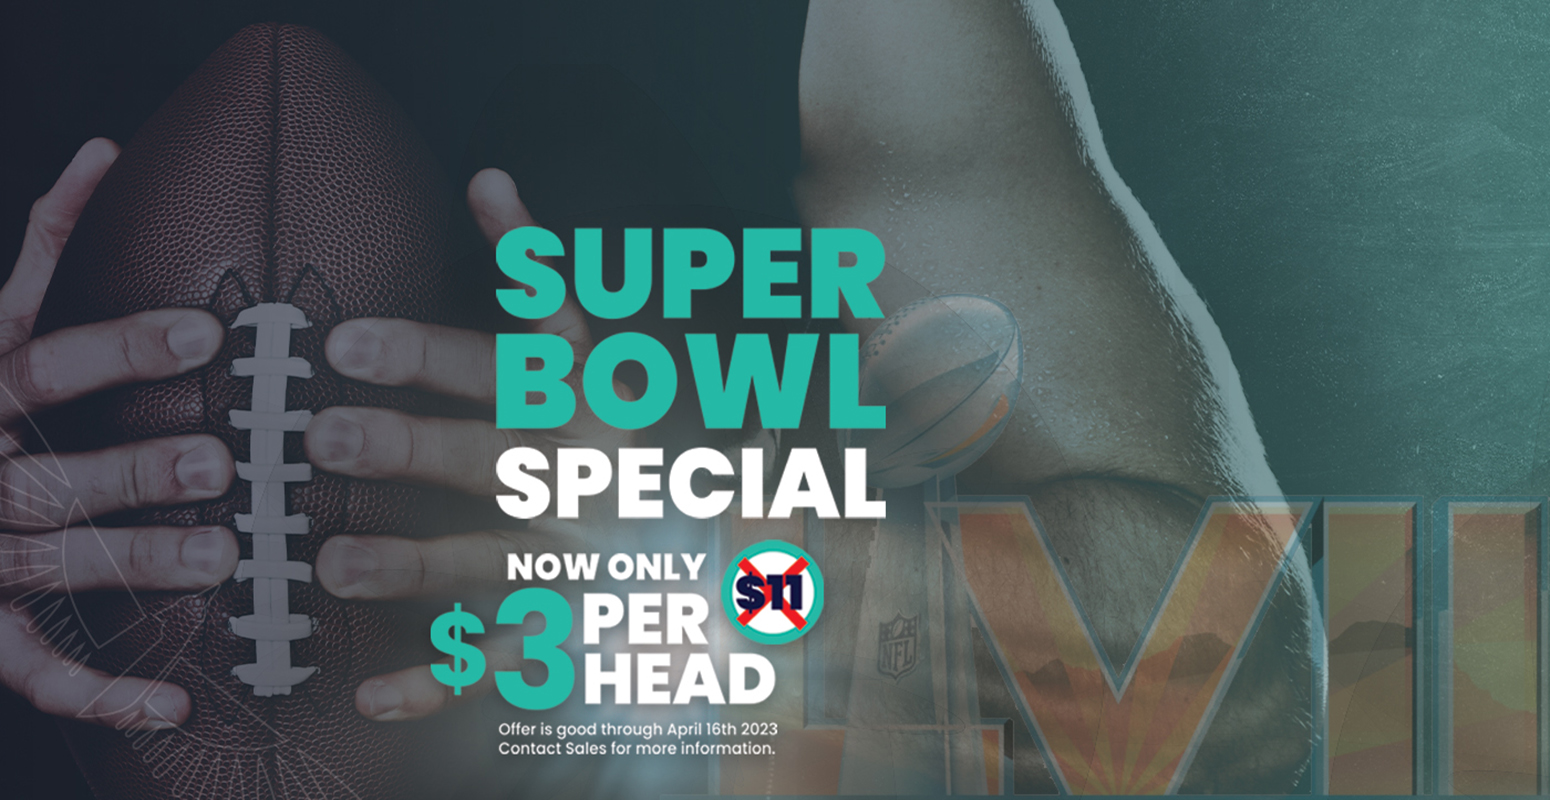 Super Bowl Special $3 Per Head